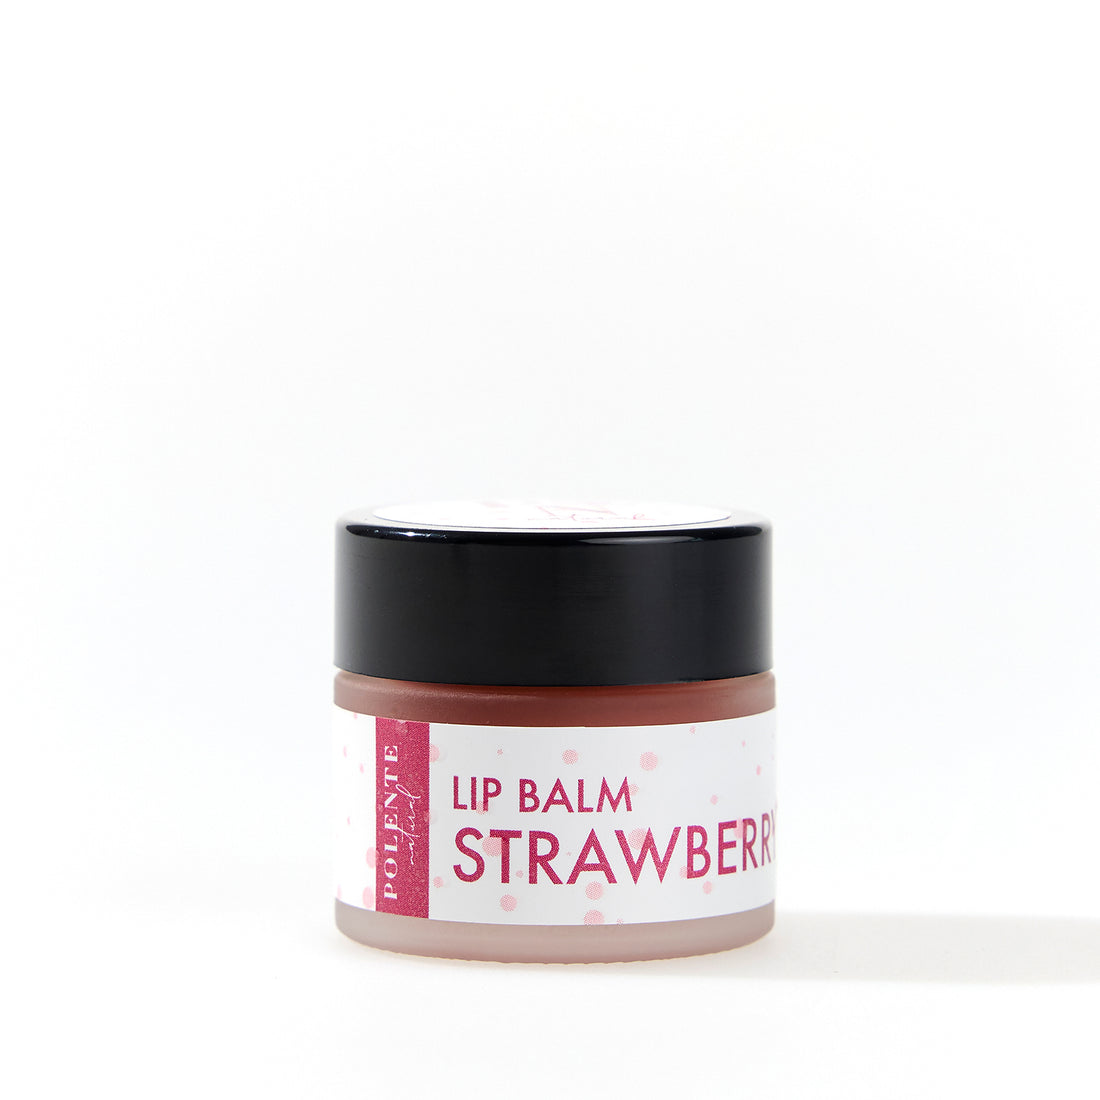 Strawberry Lip Balm - Увлажняющий крем для губ